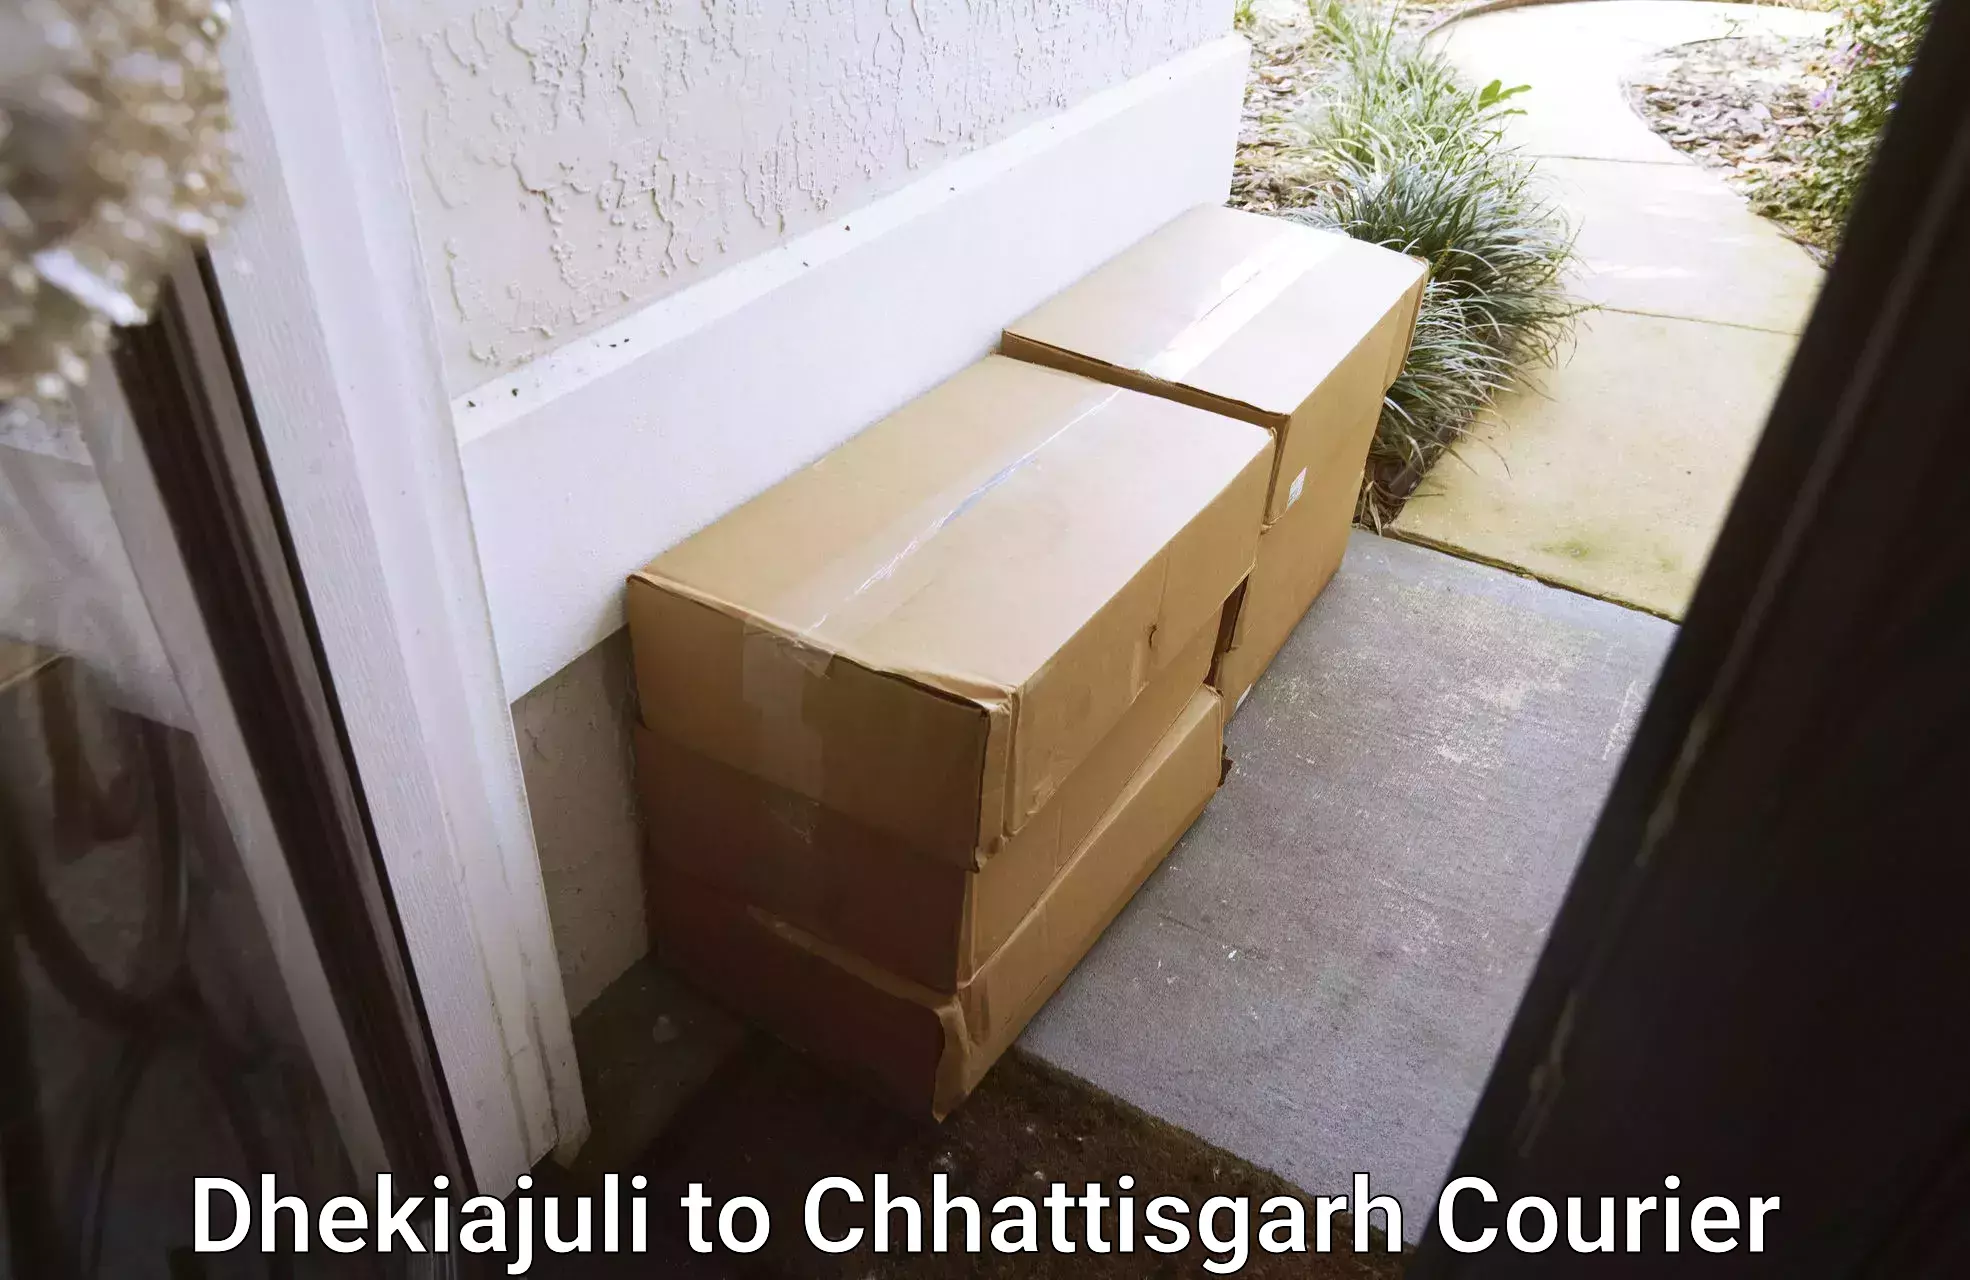 Urgent courier needs Dhekiajuli to Raigarh